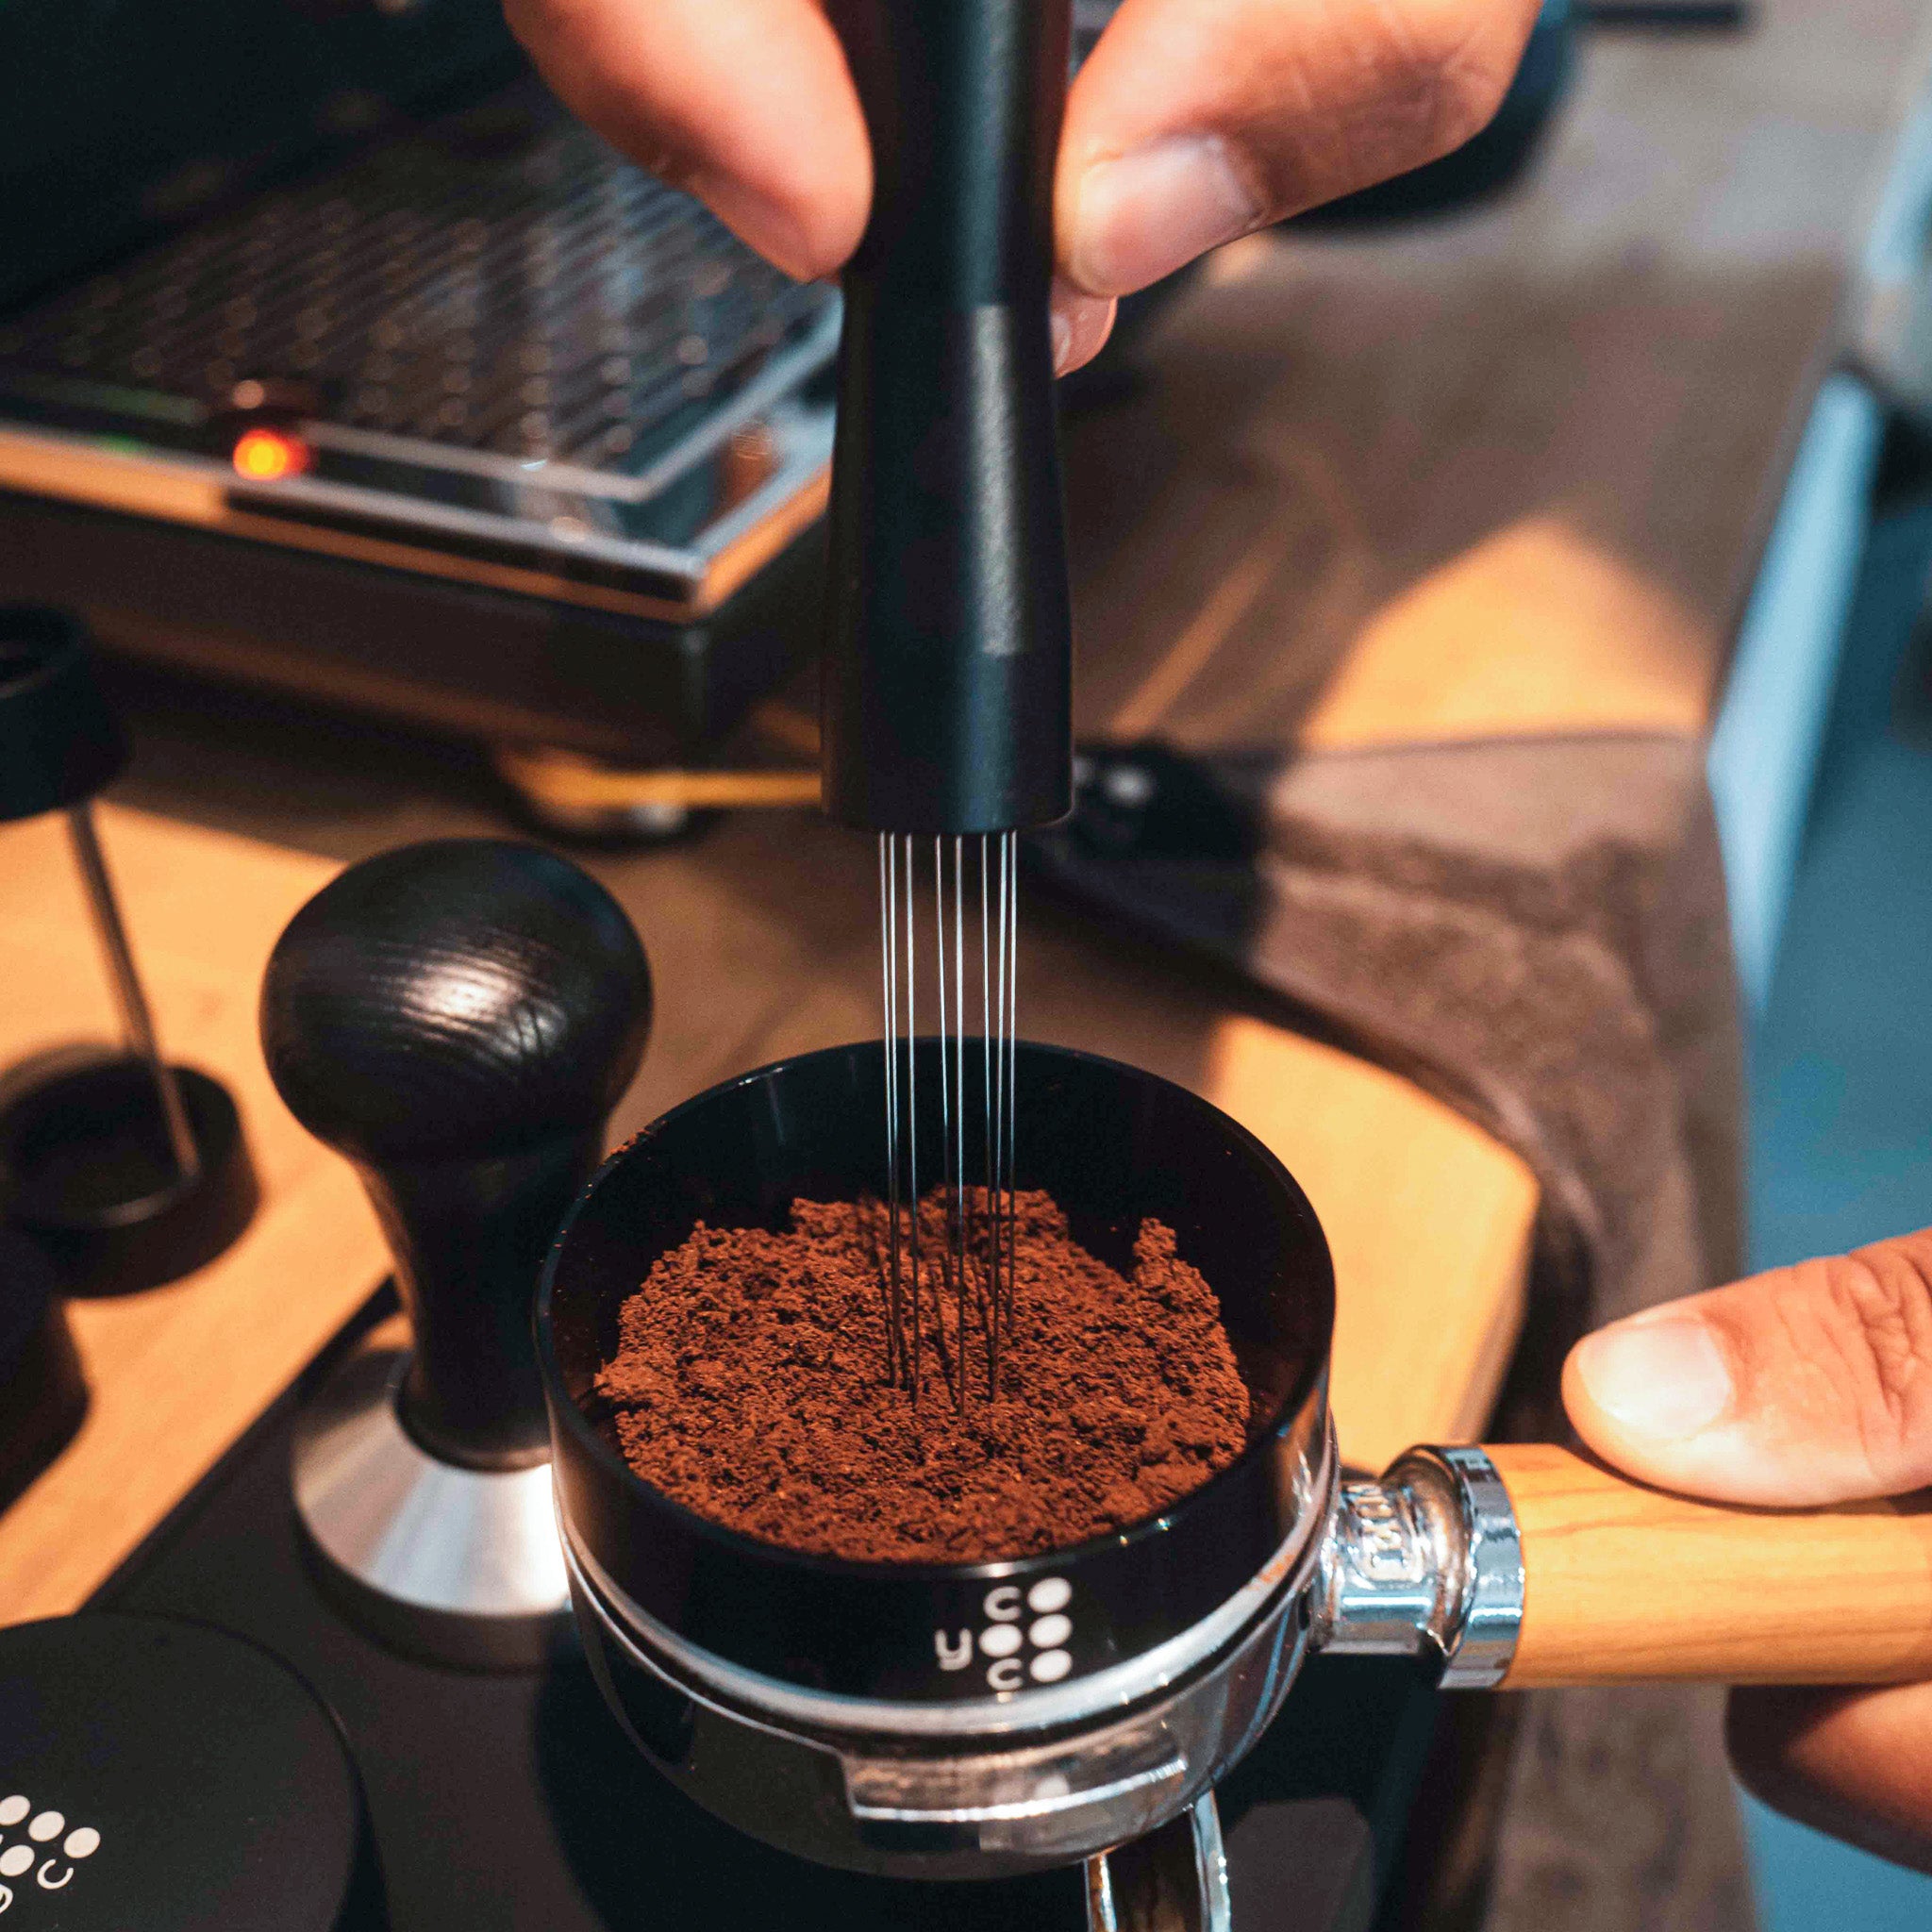 Mit dem WDT-Tool wird das Kaffeemehl im Siebträger aufgelockert. 